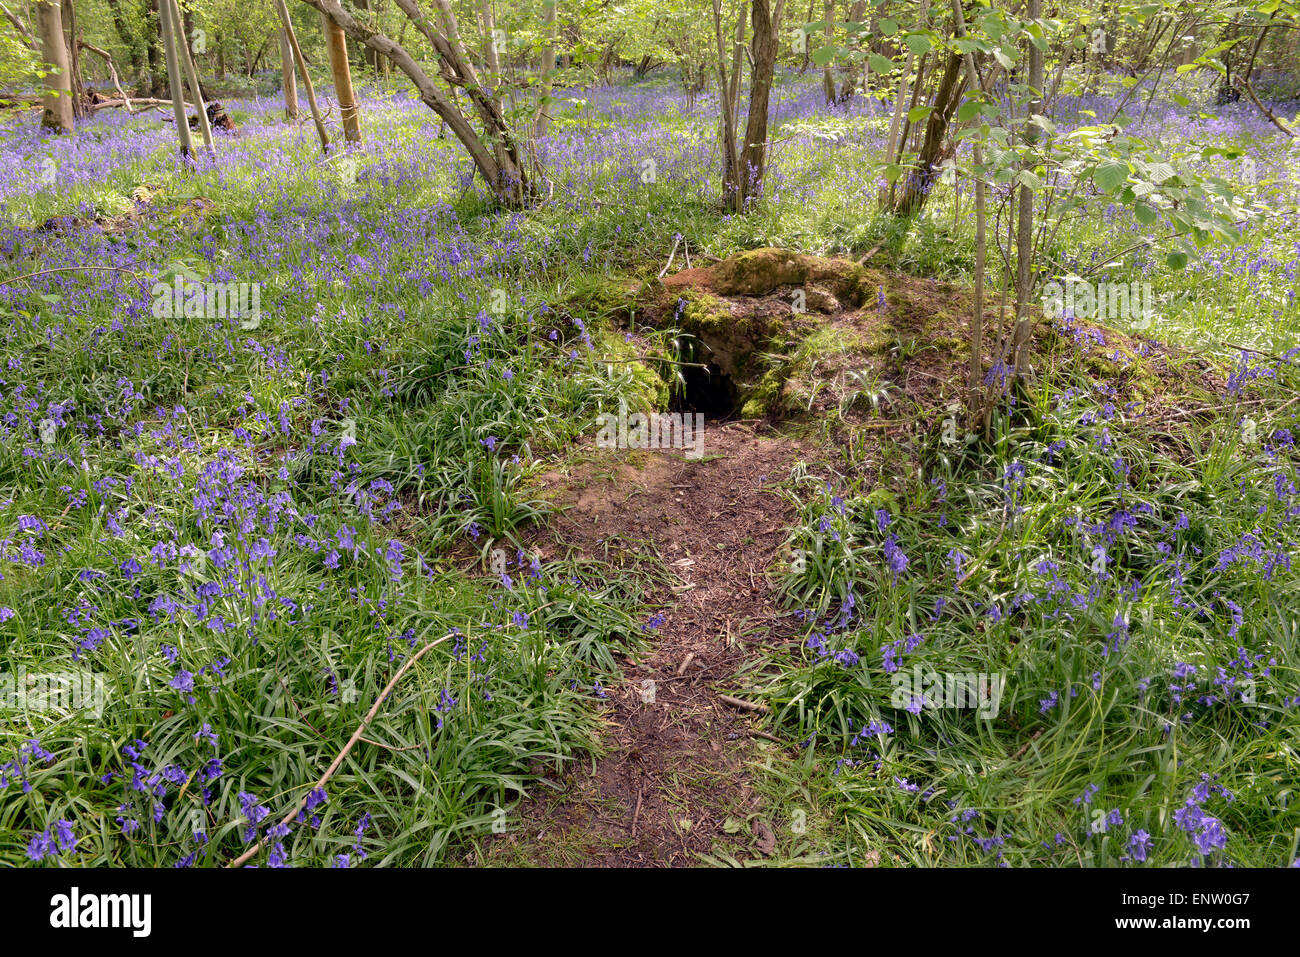 Entrada a badger sett en primavera con campanillas alfombrado suelo forestal madera Waresley Cambridgeshire Inglaterra Foto de stock